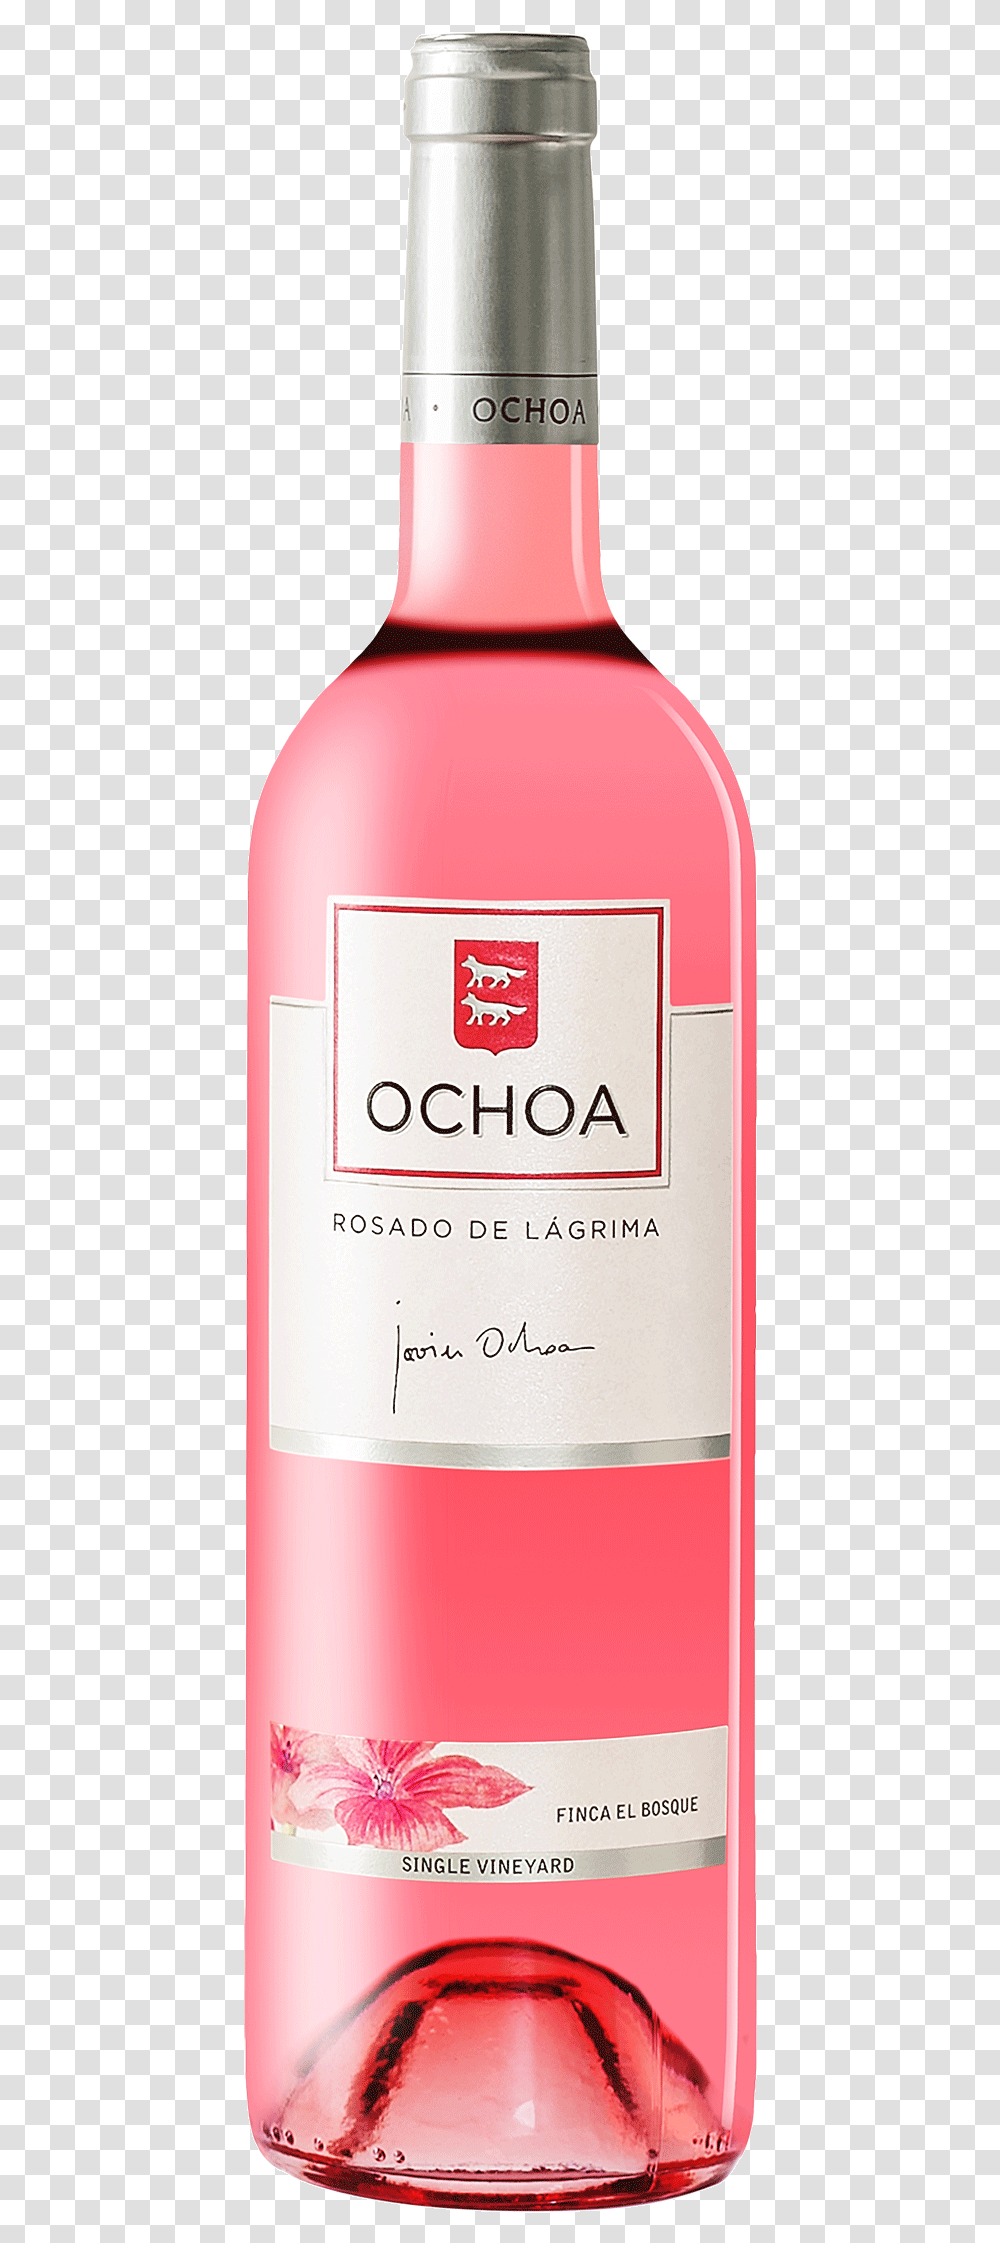 Ochoa Wine, Bottle, Beverage, Drink, Alcohol Transparent Png